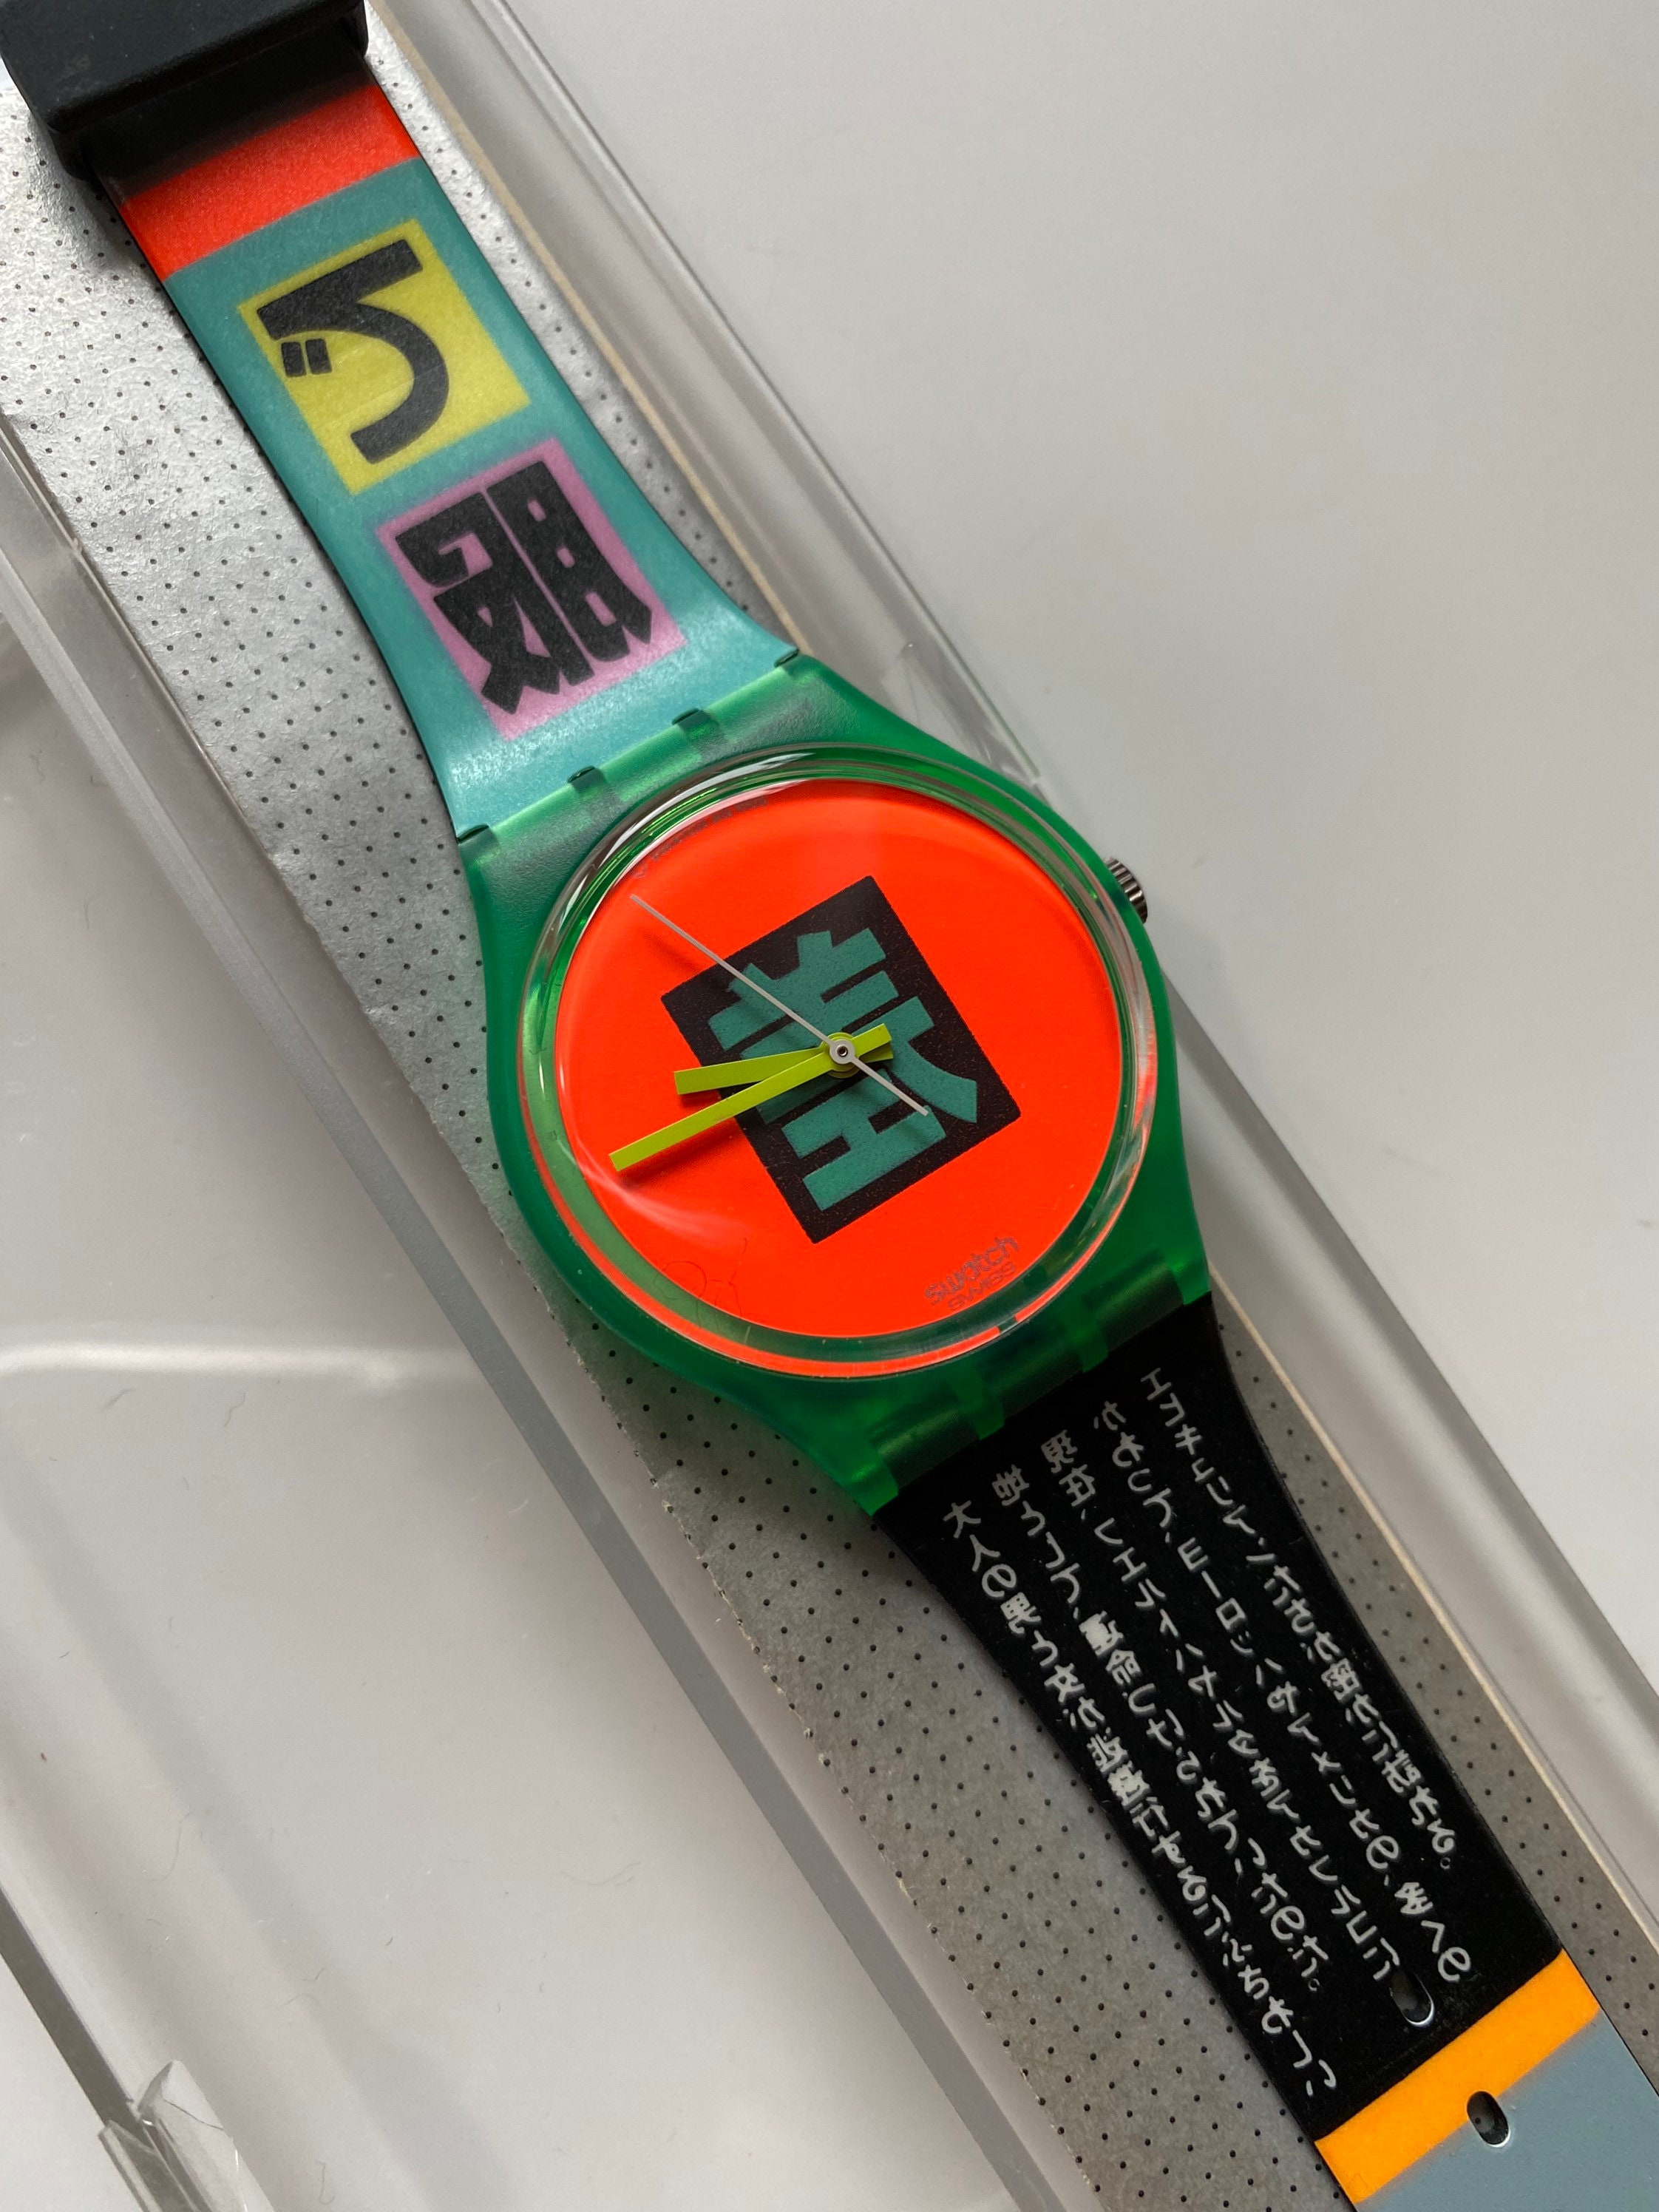 New 1989 Swatch Watch Rare SHIBUYA GG104 Unworn Mint in Box Running  Japanese Art 34mm Neon Retro Hard to Find Running No Cracks 